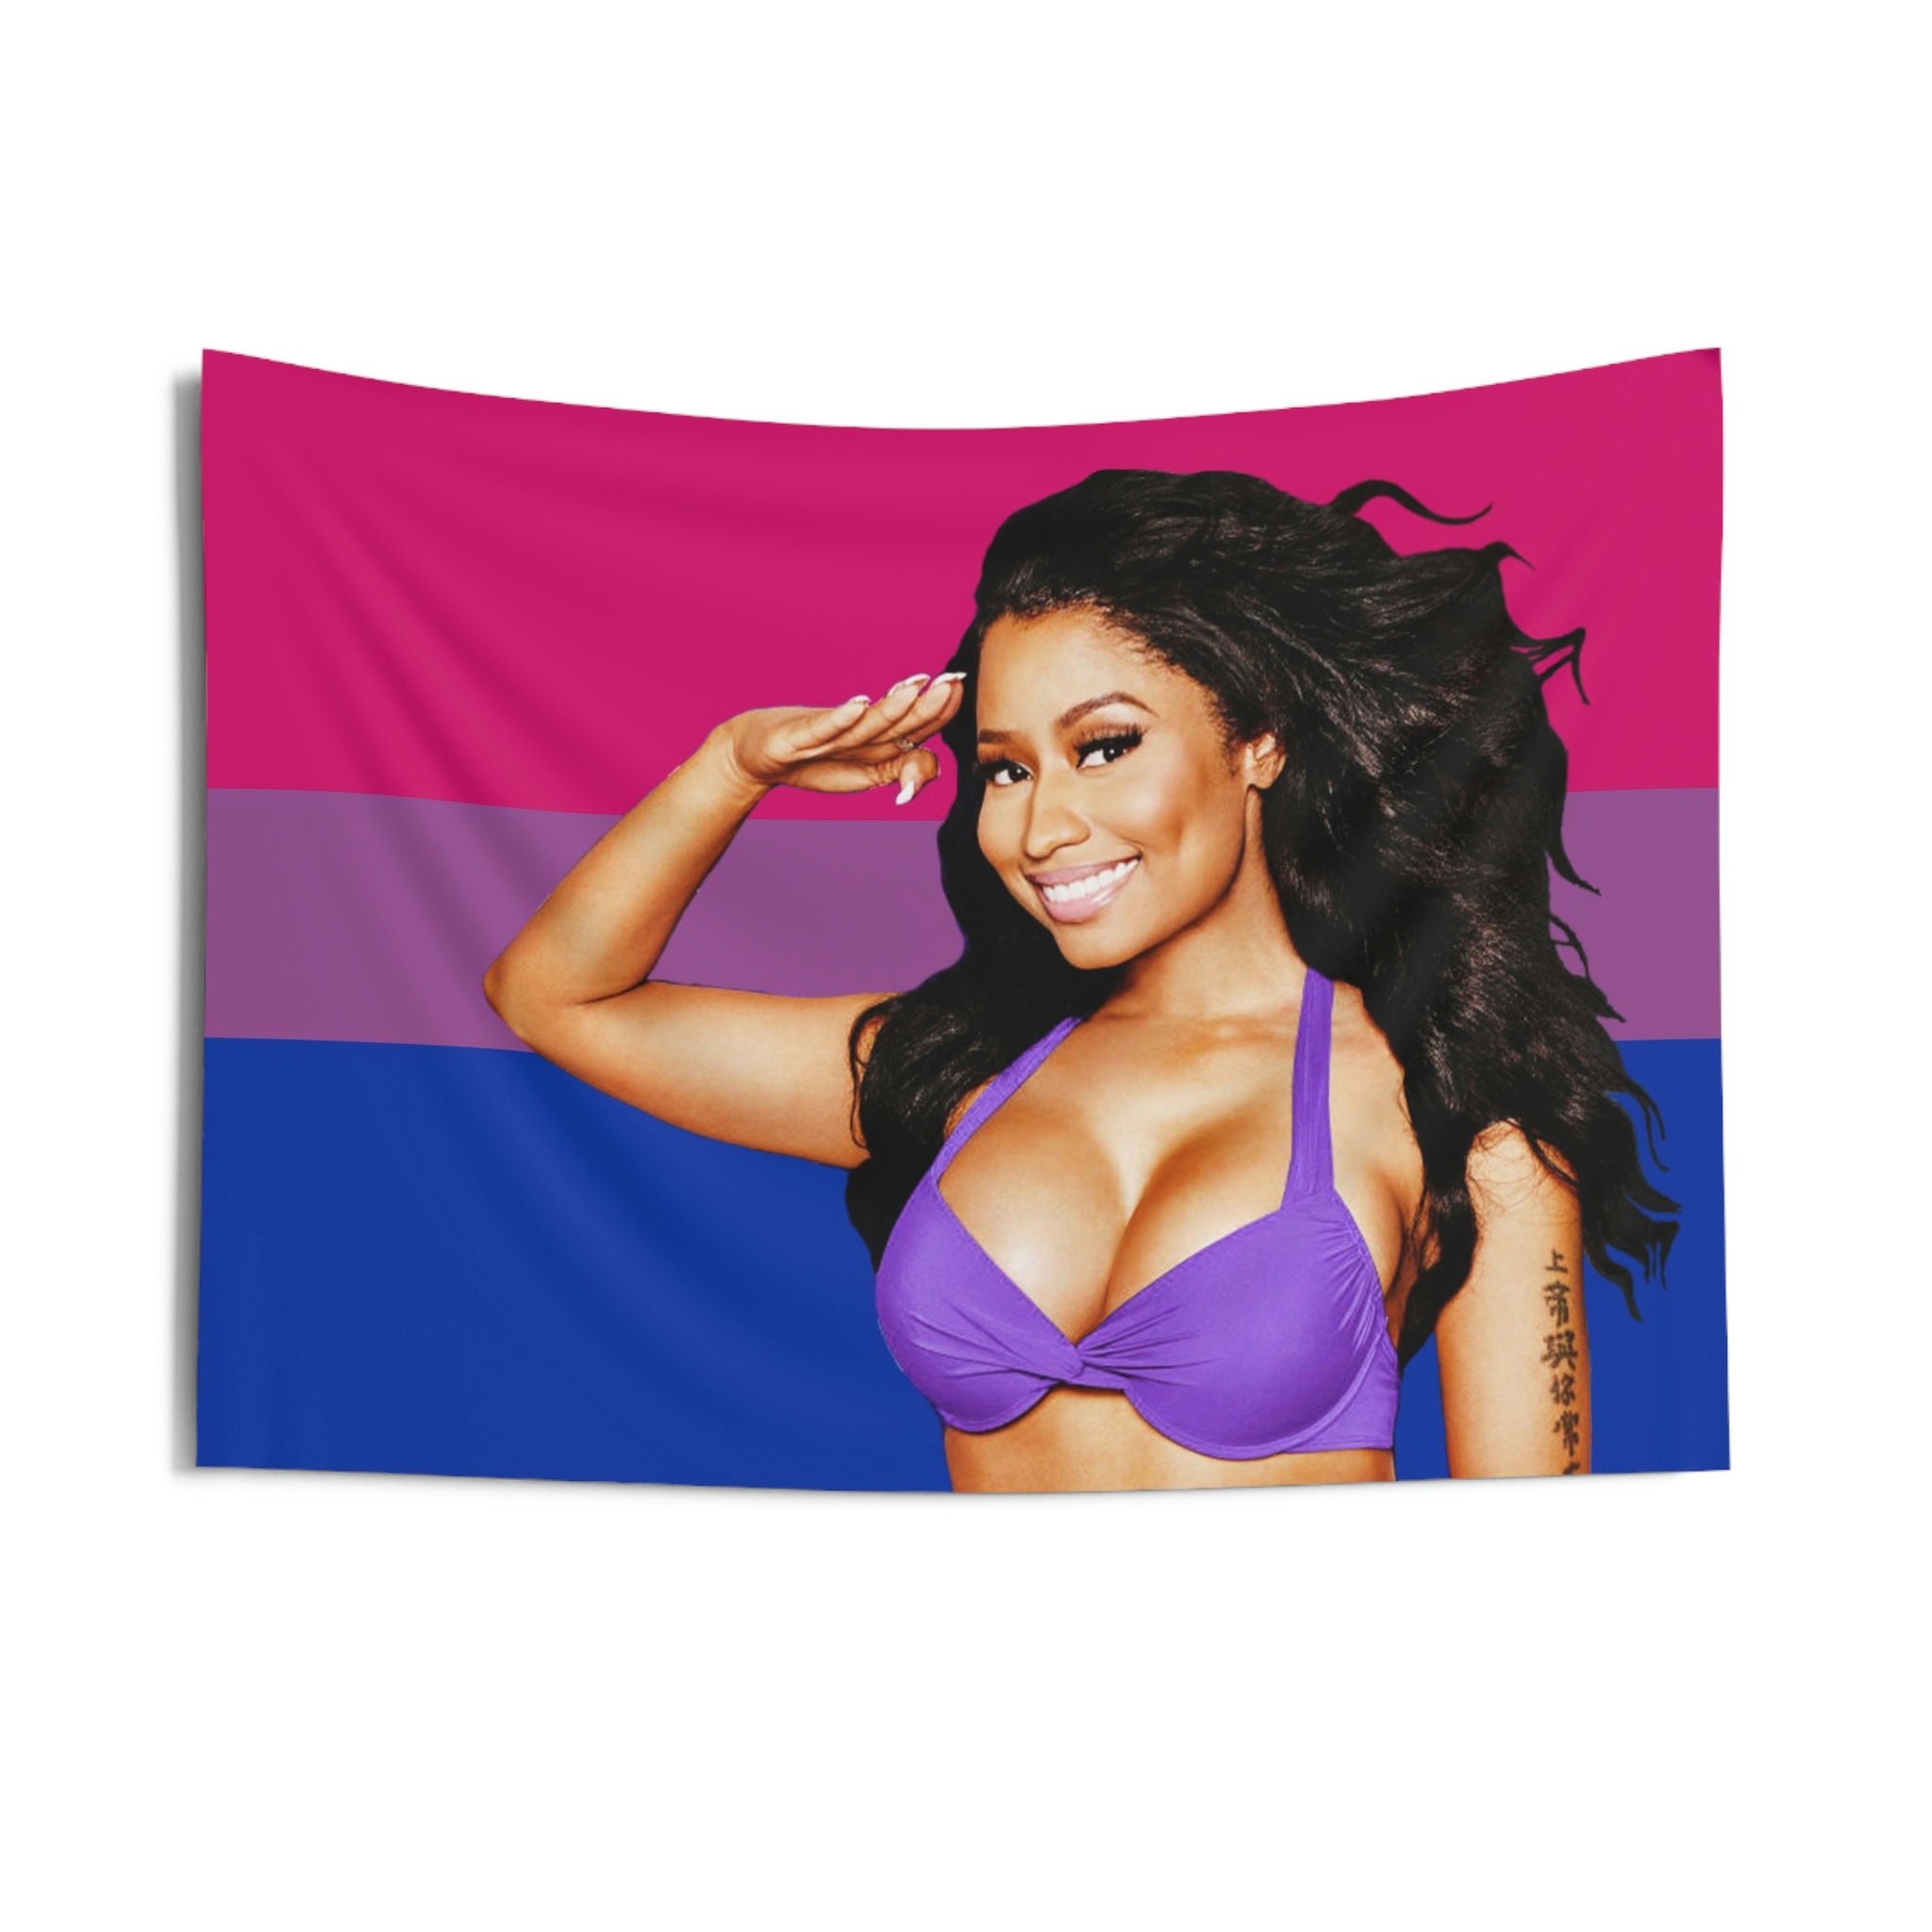 Nicki Minaj Lesbian Porn Shower - Lesbian Shower Curtain - Etsy Ireland